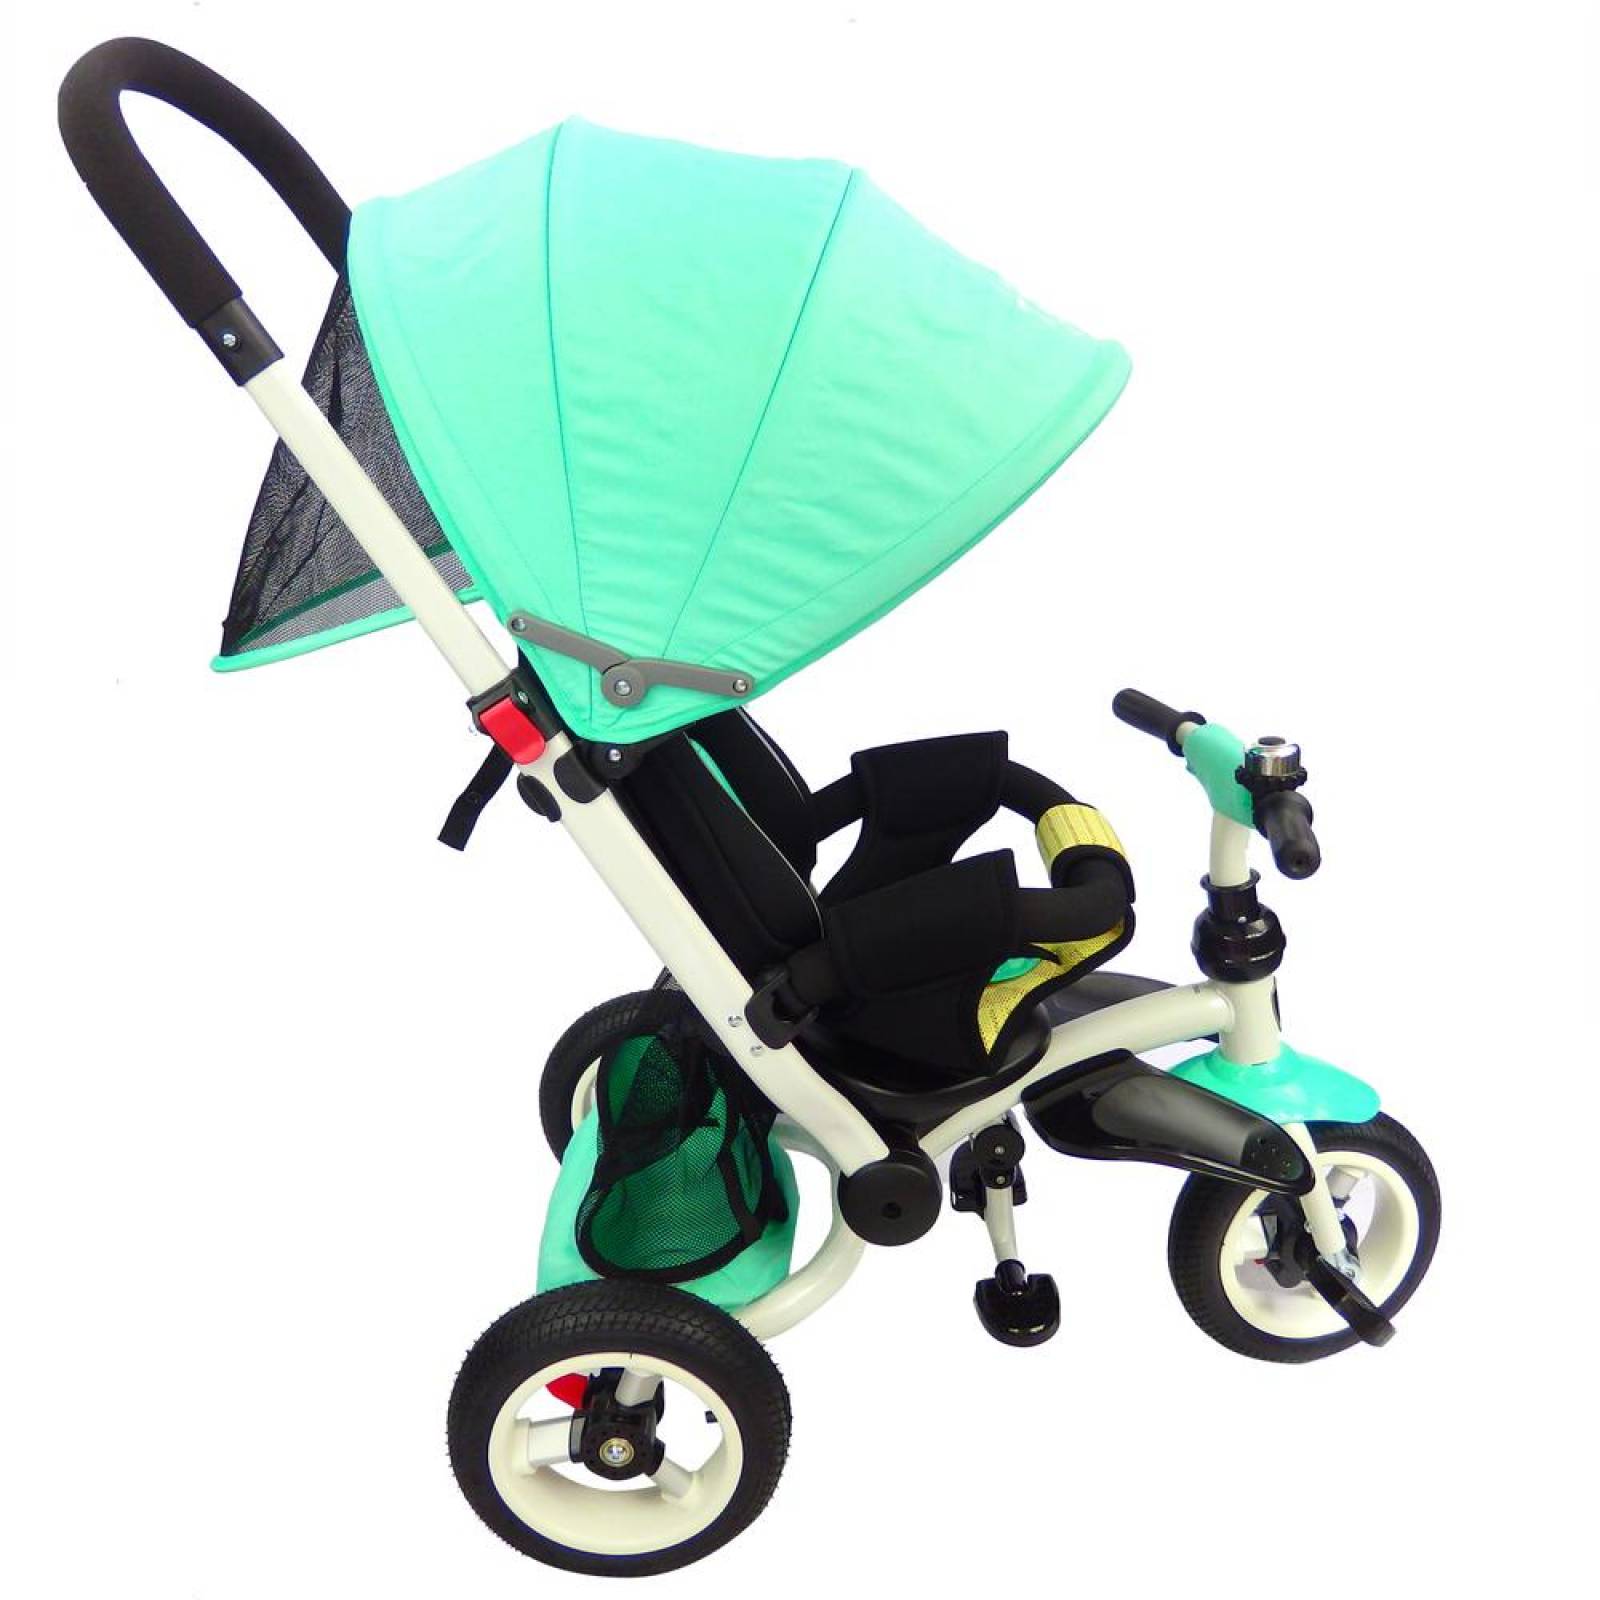 Triciclo para Bebe de lujo Llantas de Aire tipo carriola de 6-5 años Aqua 